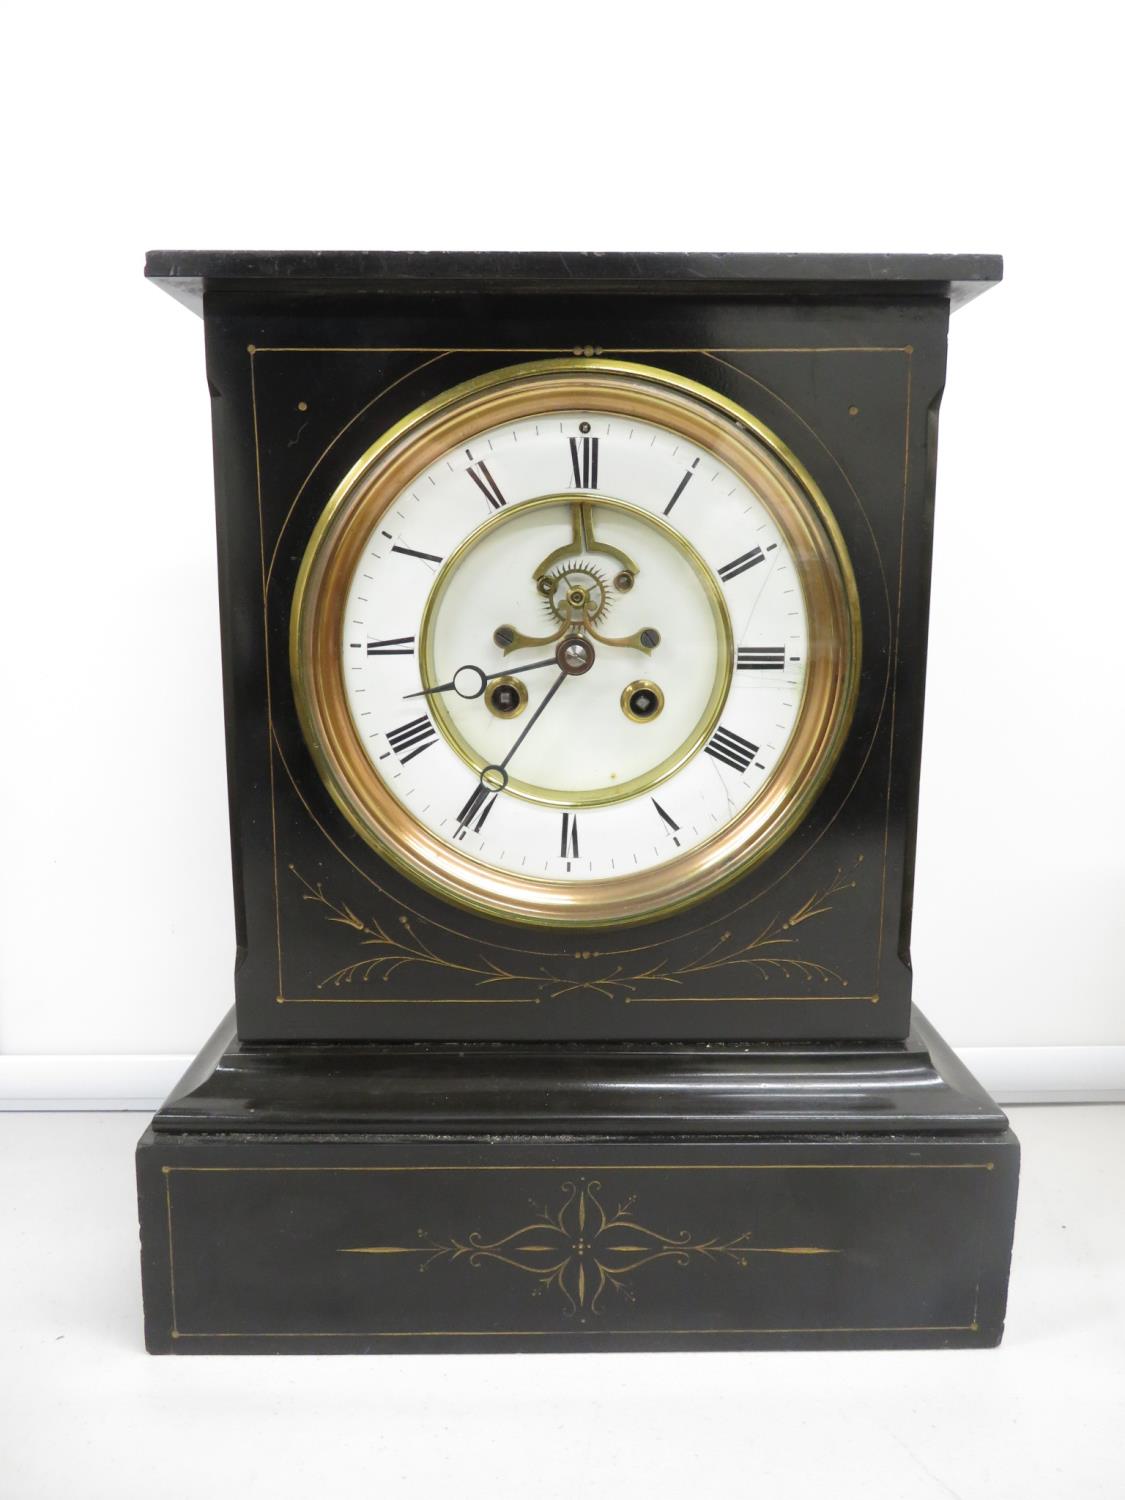 13" high 6" dial Breguet mantle clock - clock runs